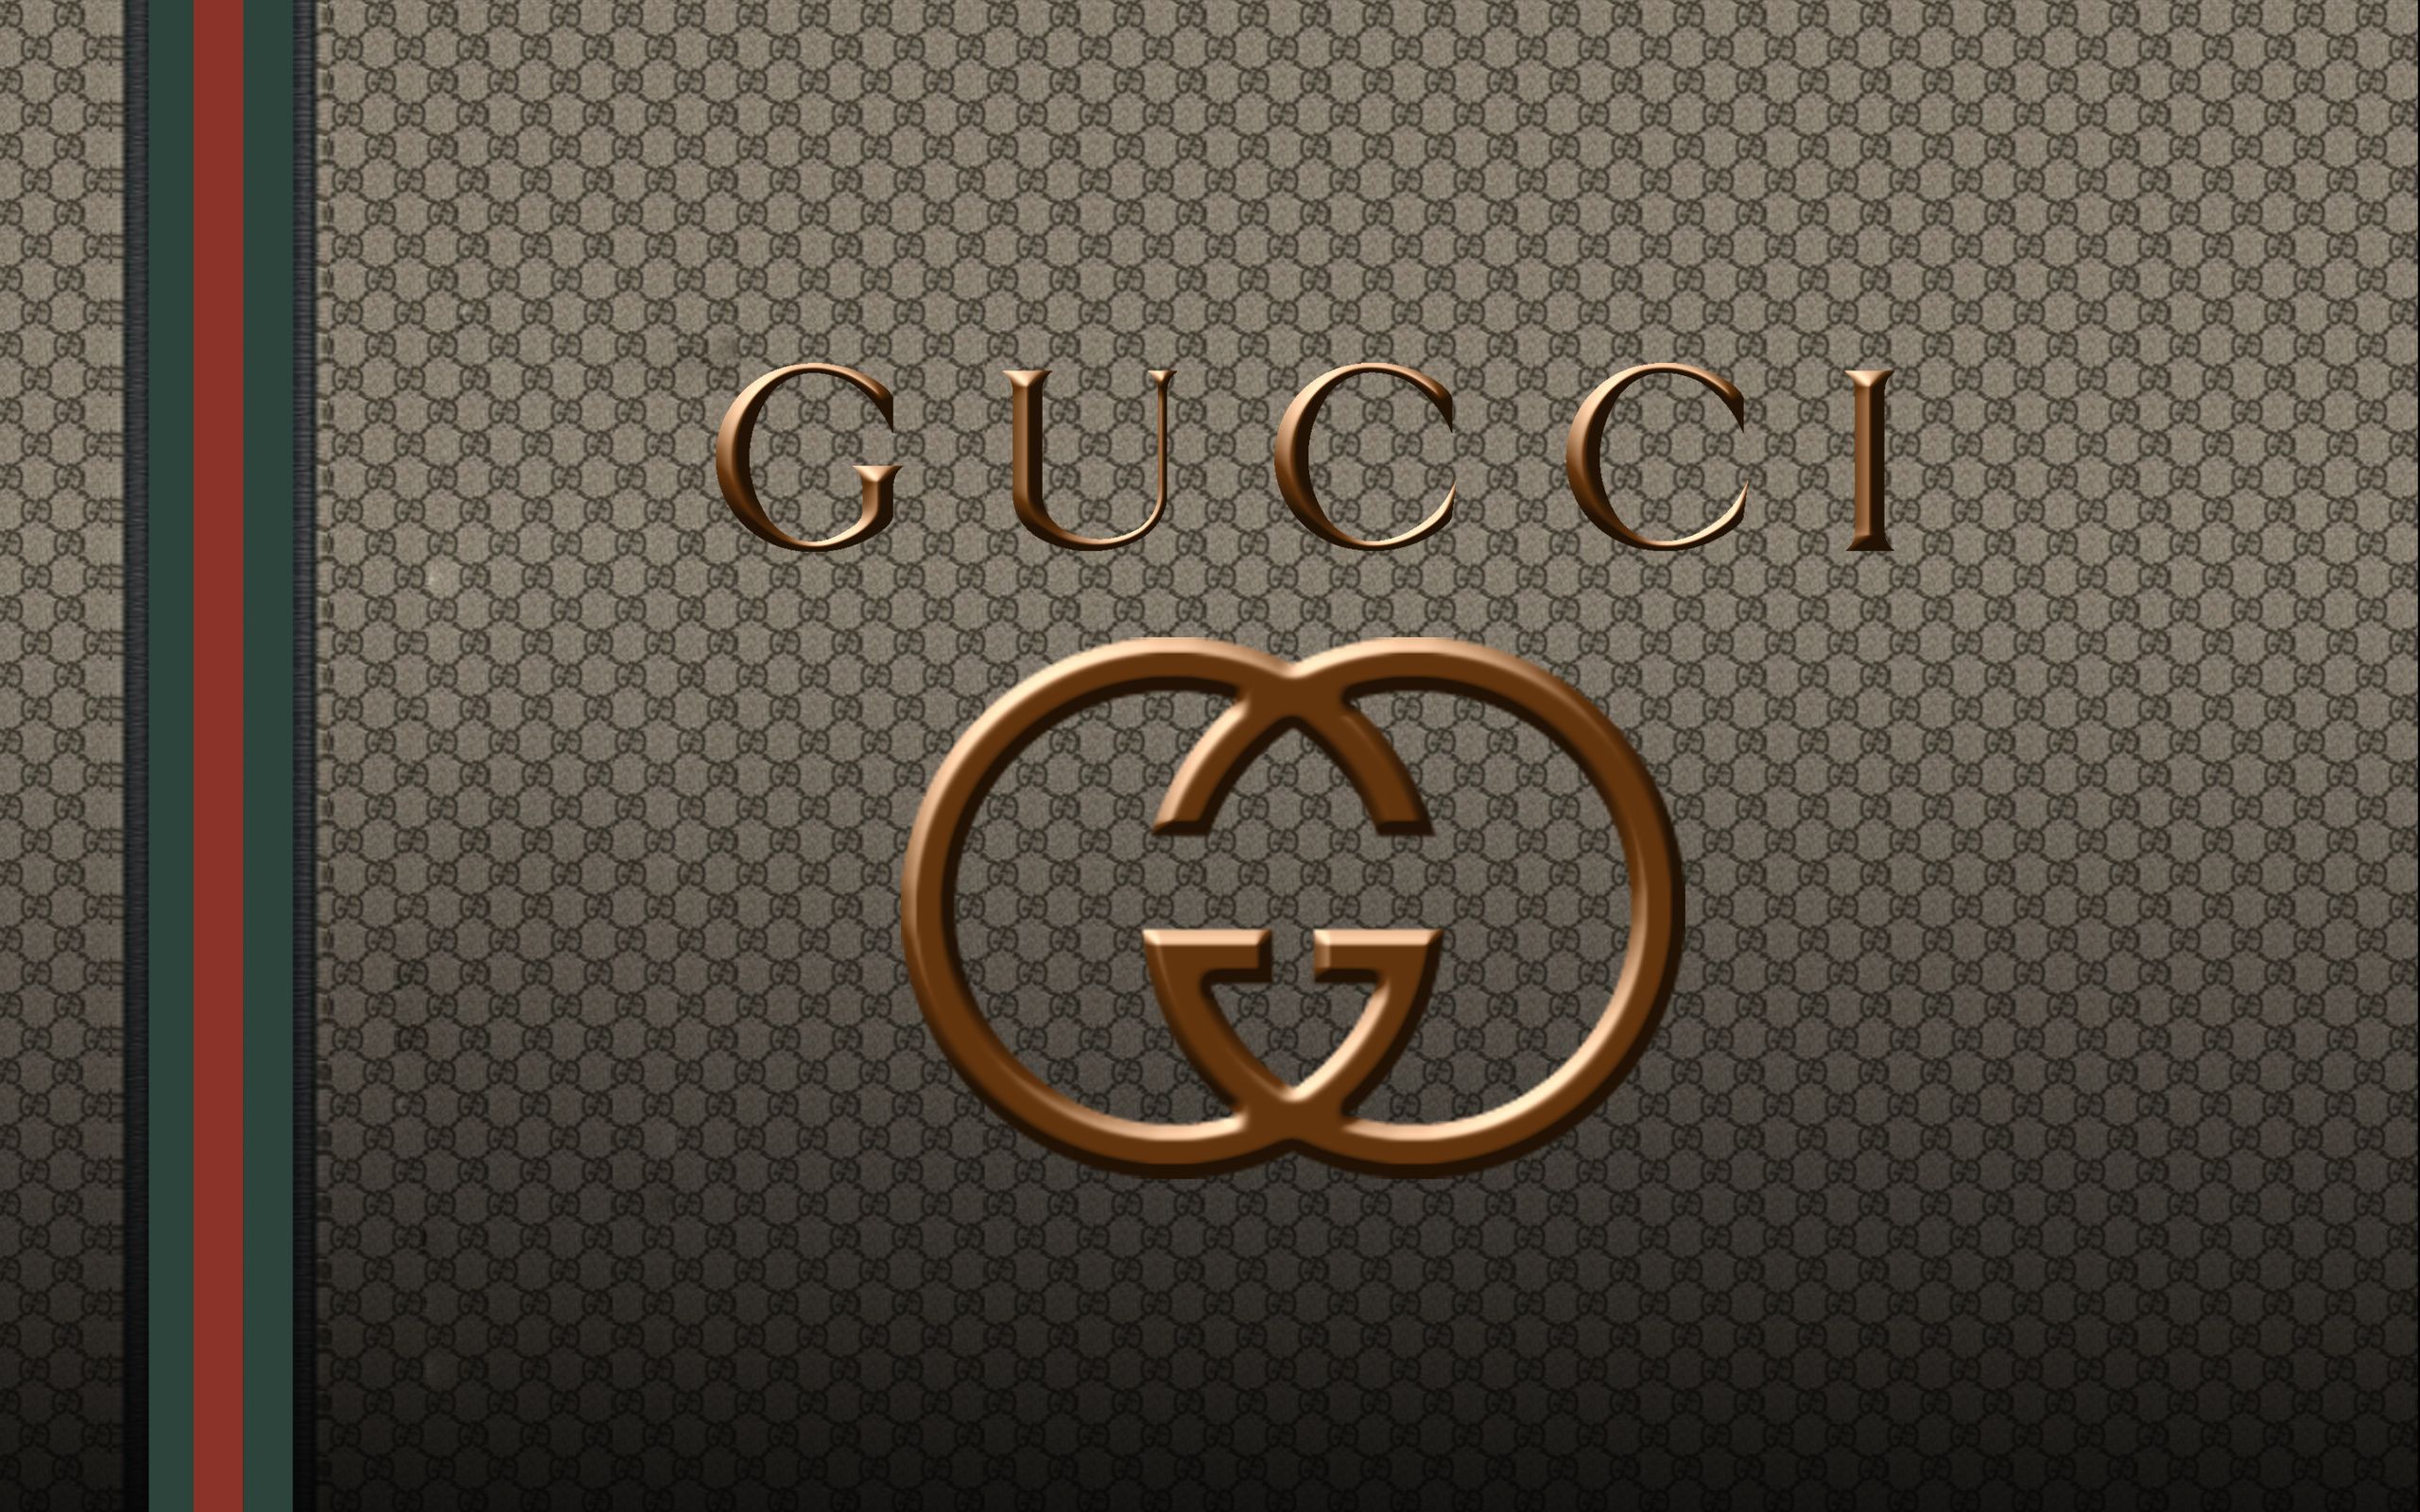 Gucci 高清壁纸 桌面背景 2560x1600 Wallpaper Abyss